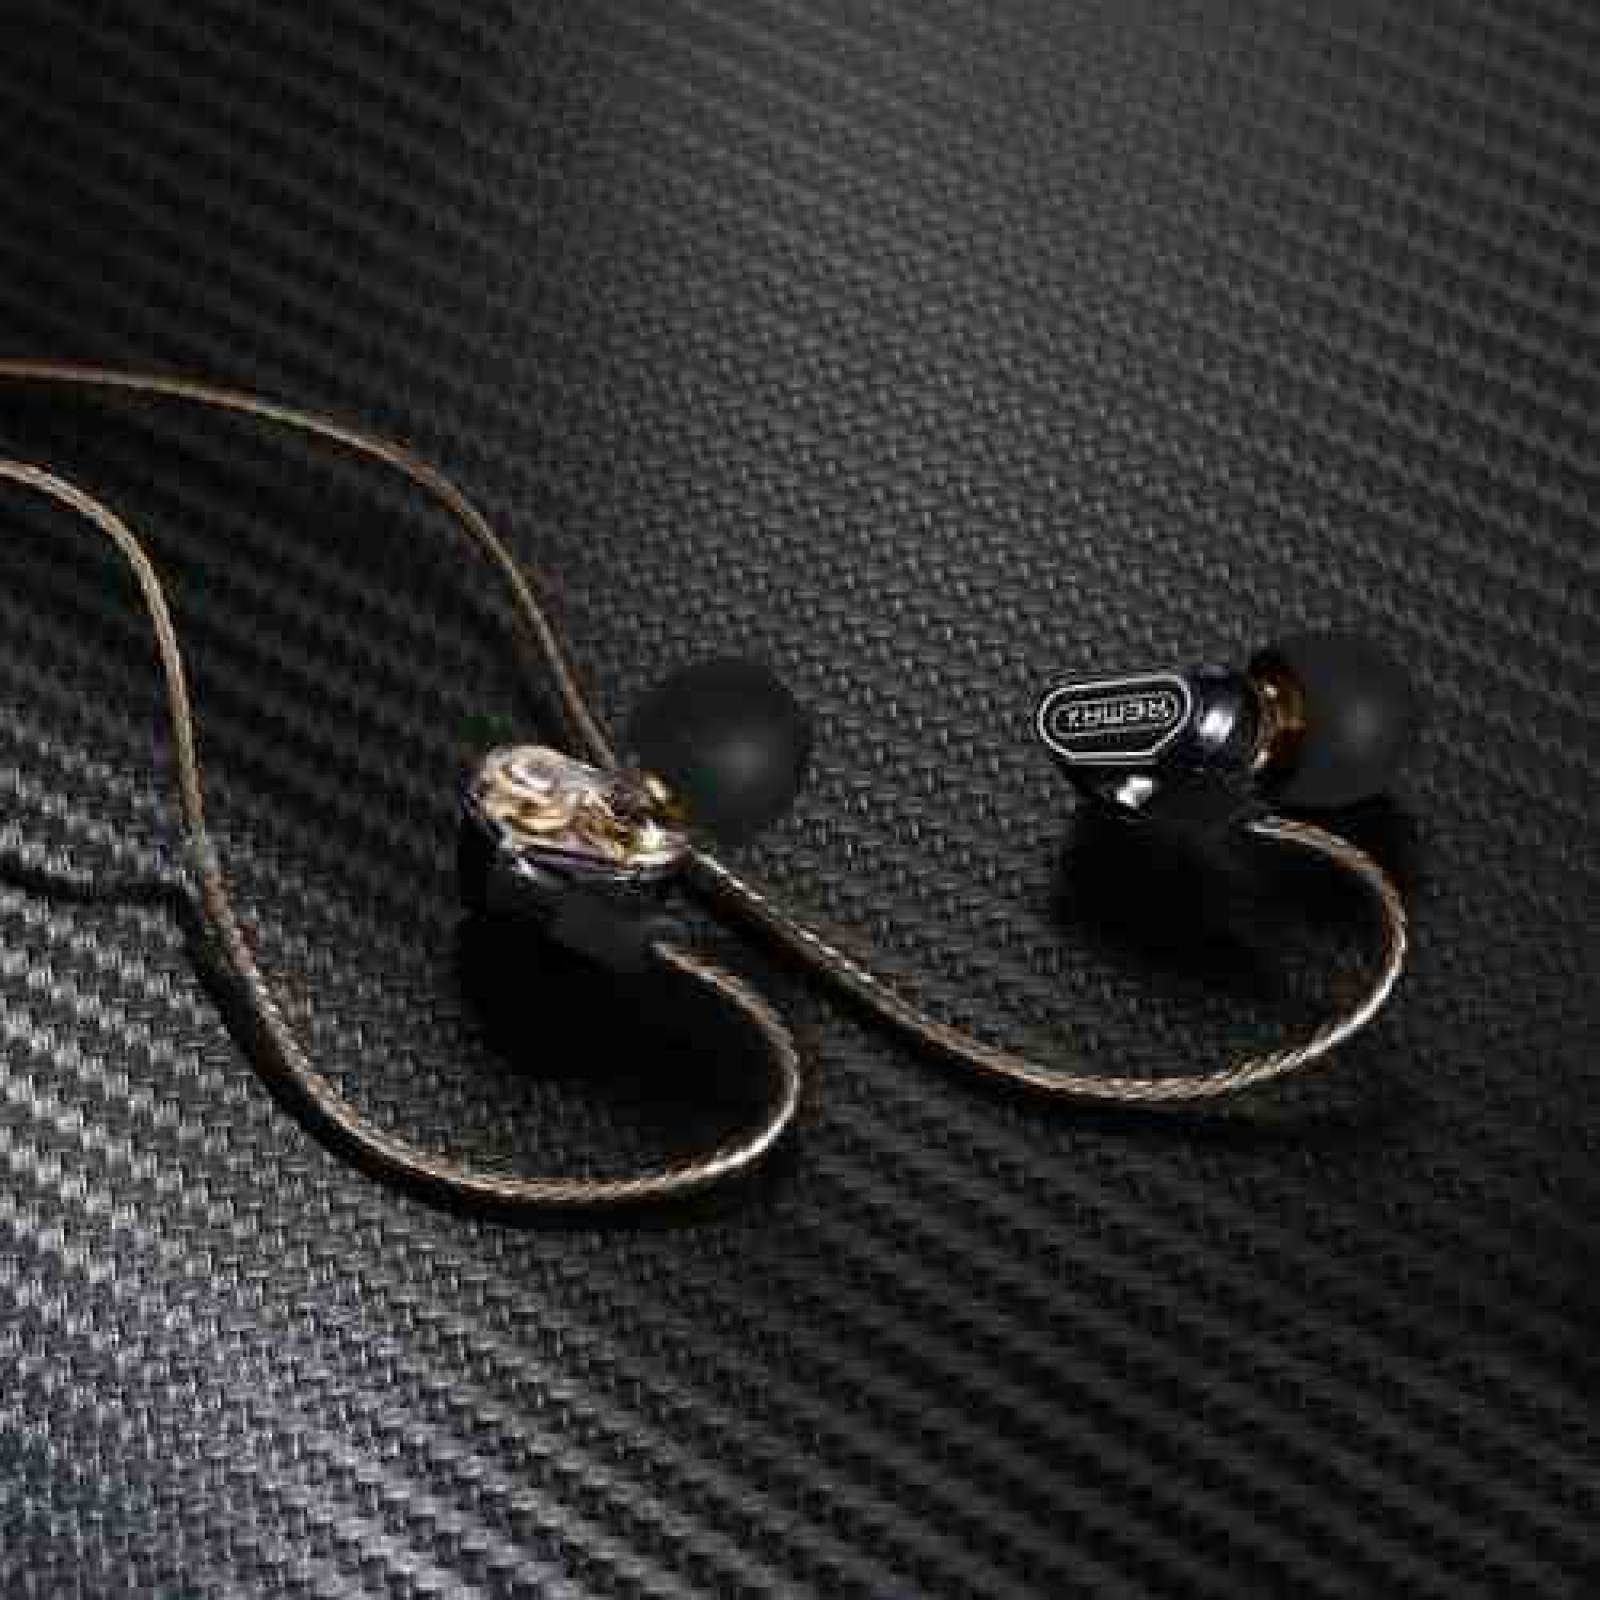 Audífonos de Doble Bocina RM580 Black